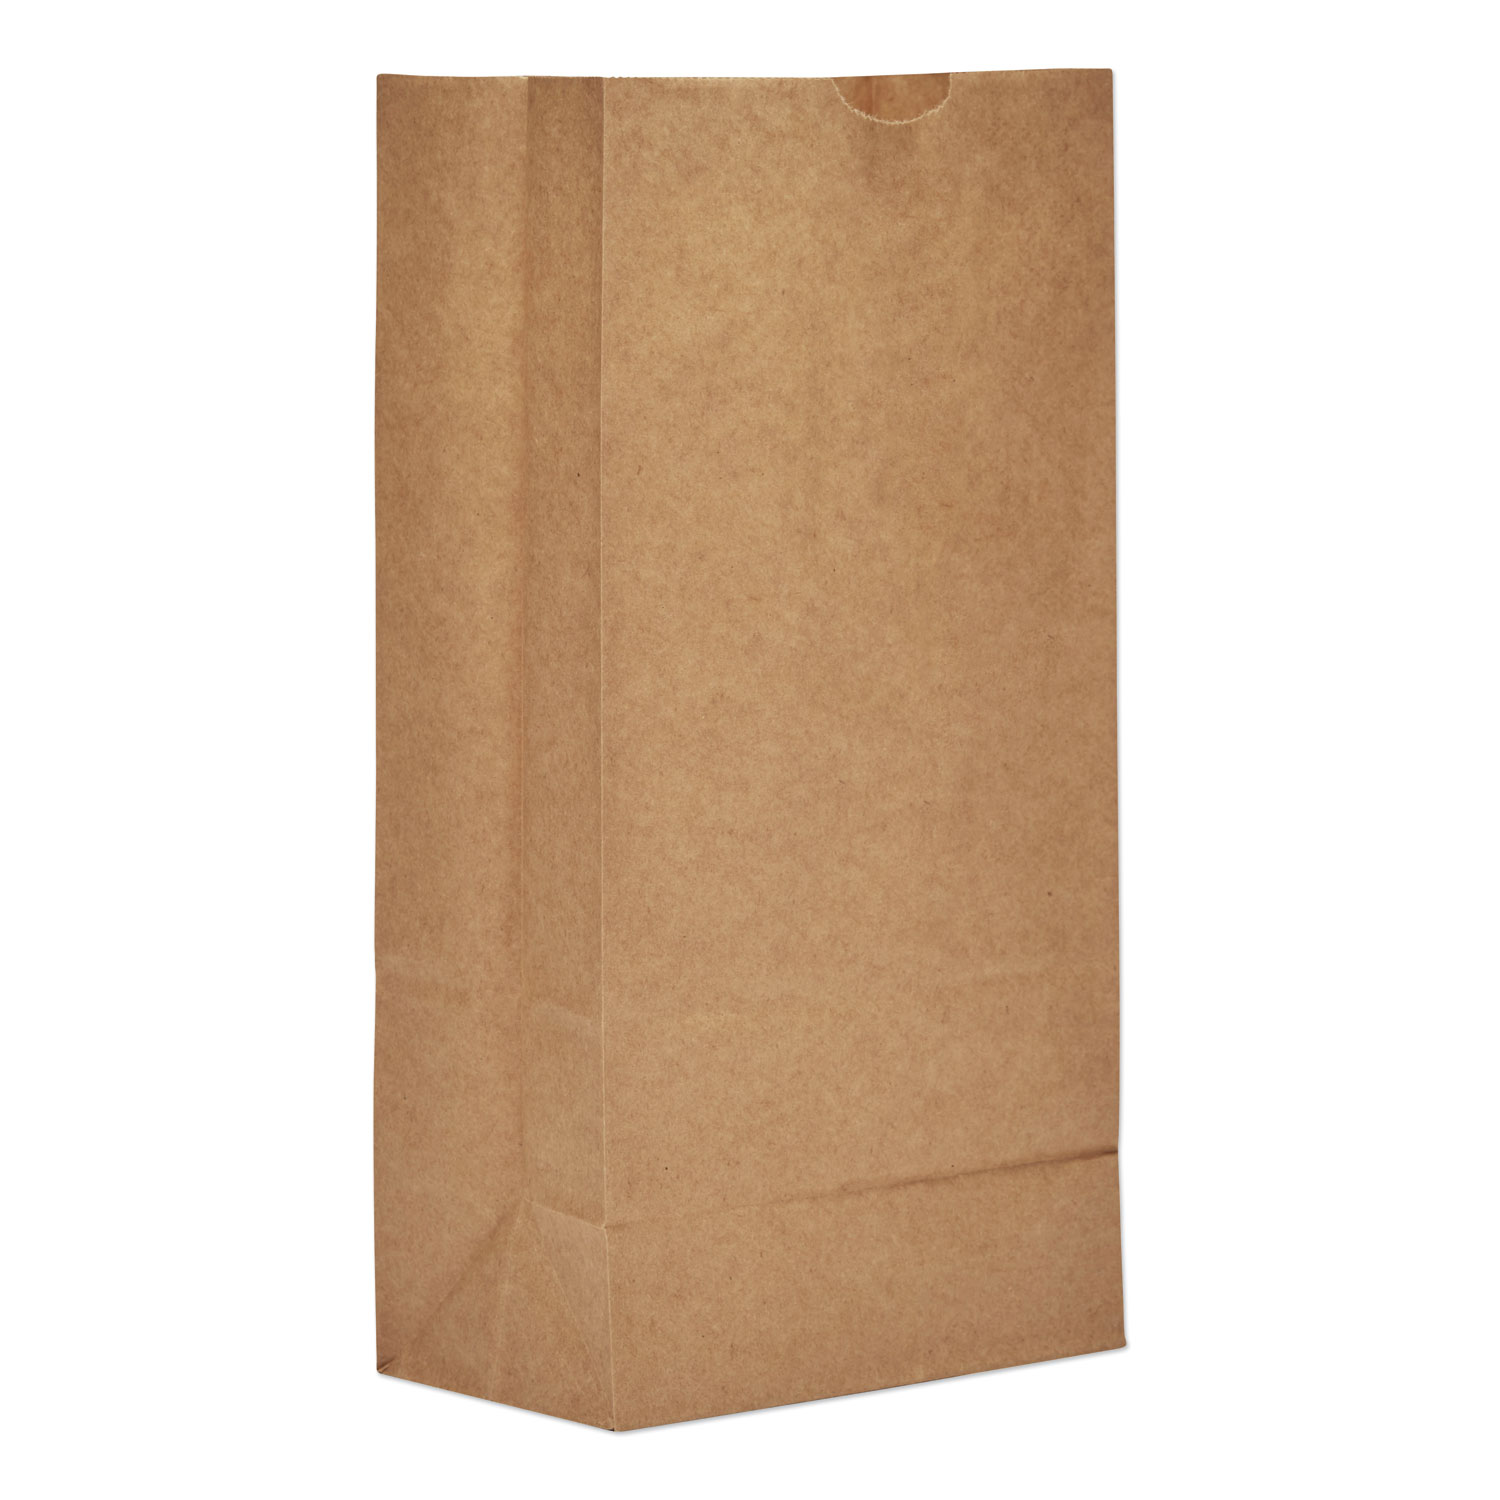  General BAG GK8 Grocery Paper Bags, 35 lbs Capacity, #8, 6.13w x 4.17d x 12.44h, Kraft, 2,000 Bags (BAGGK8) 